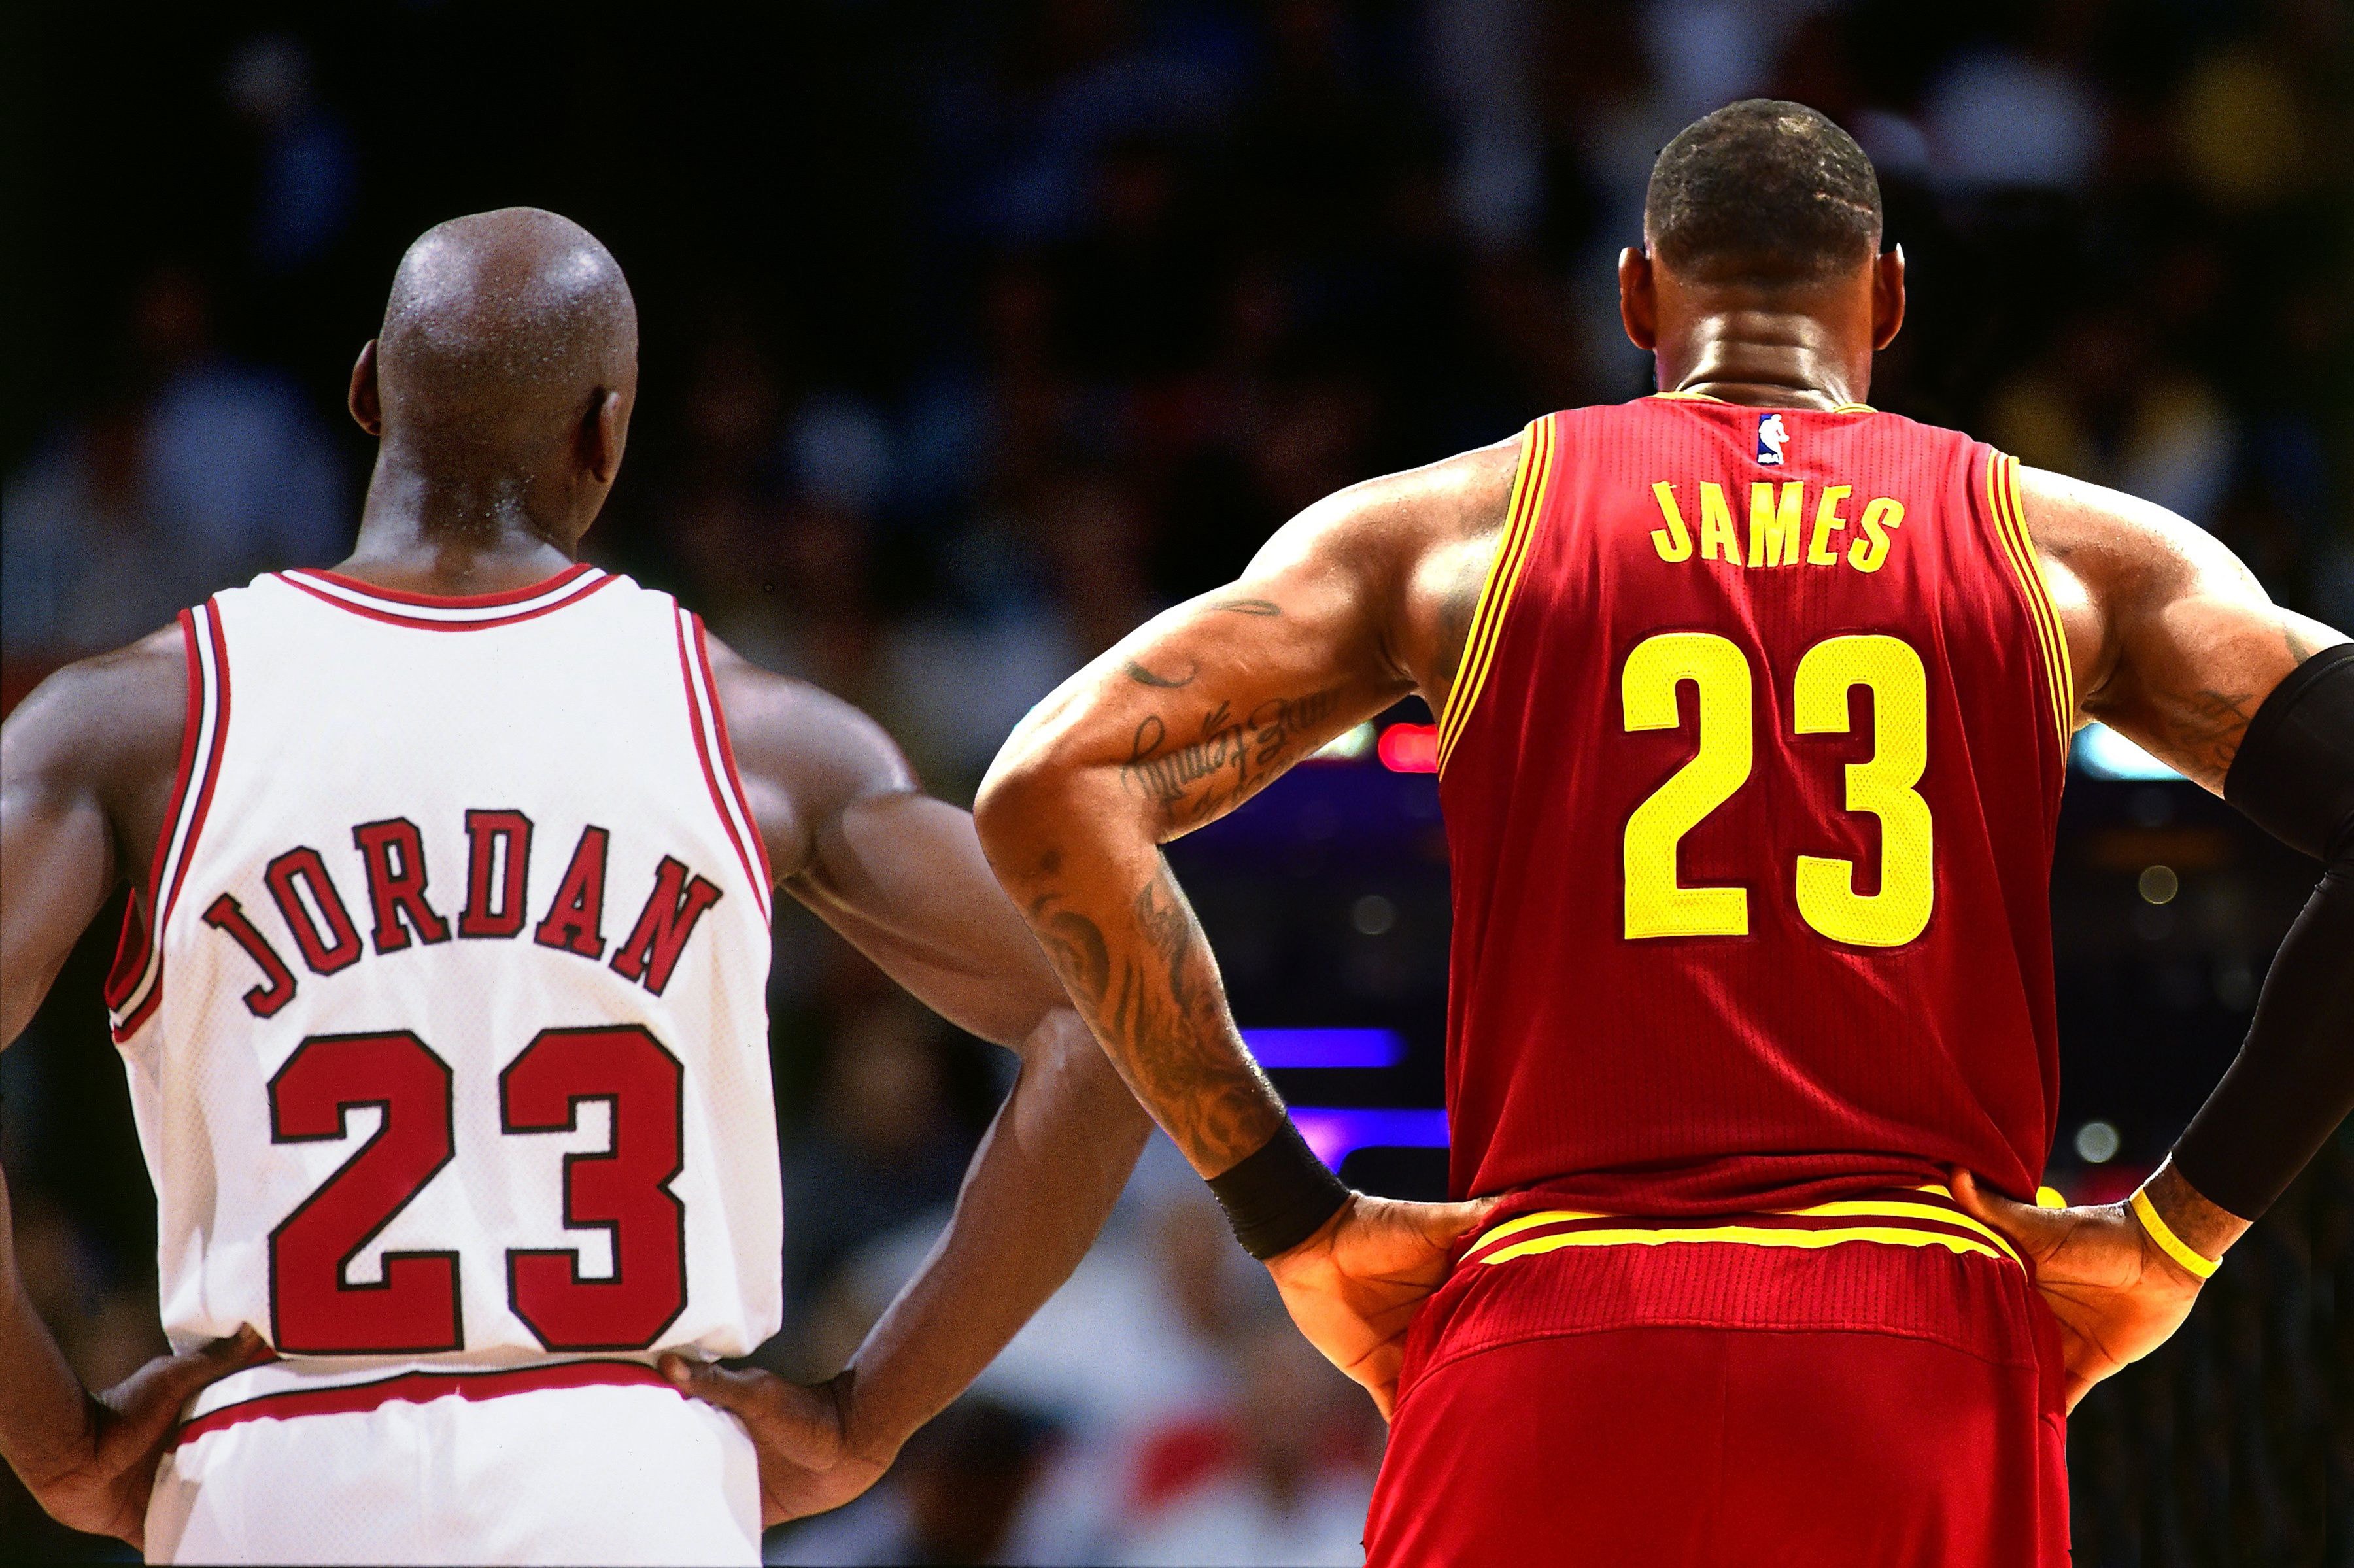 統計顯示 LeBron James 的 NBA 出場時間已超越 Michael Jordan 